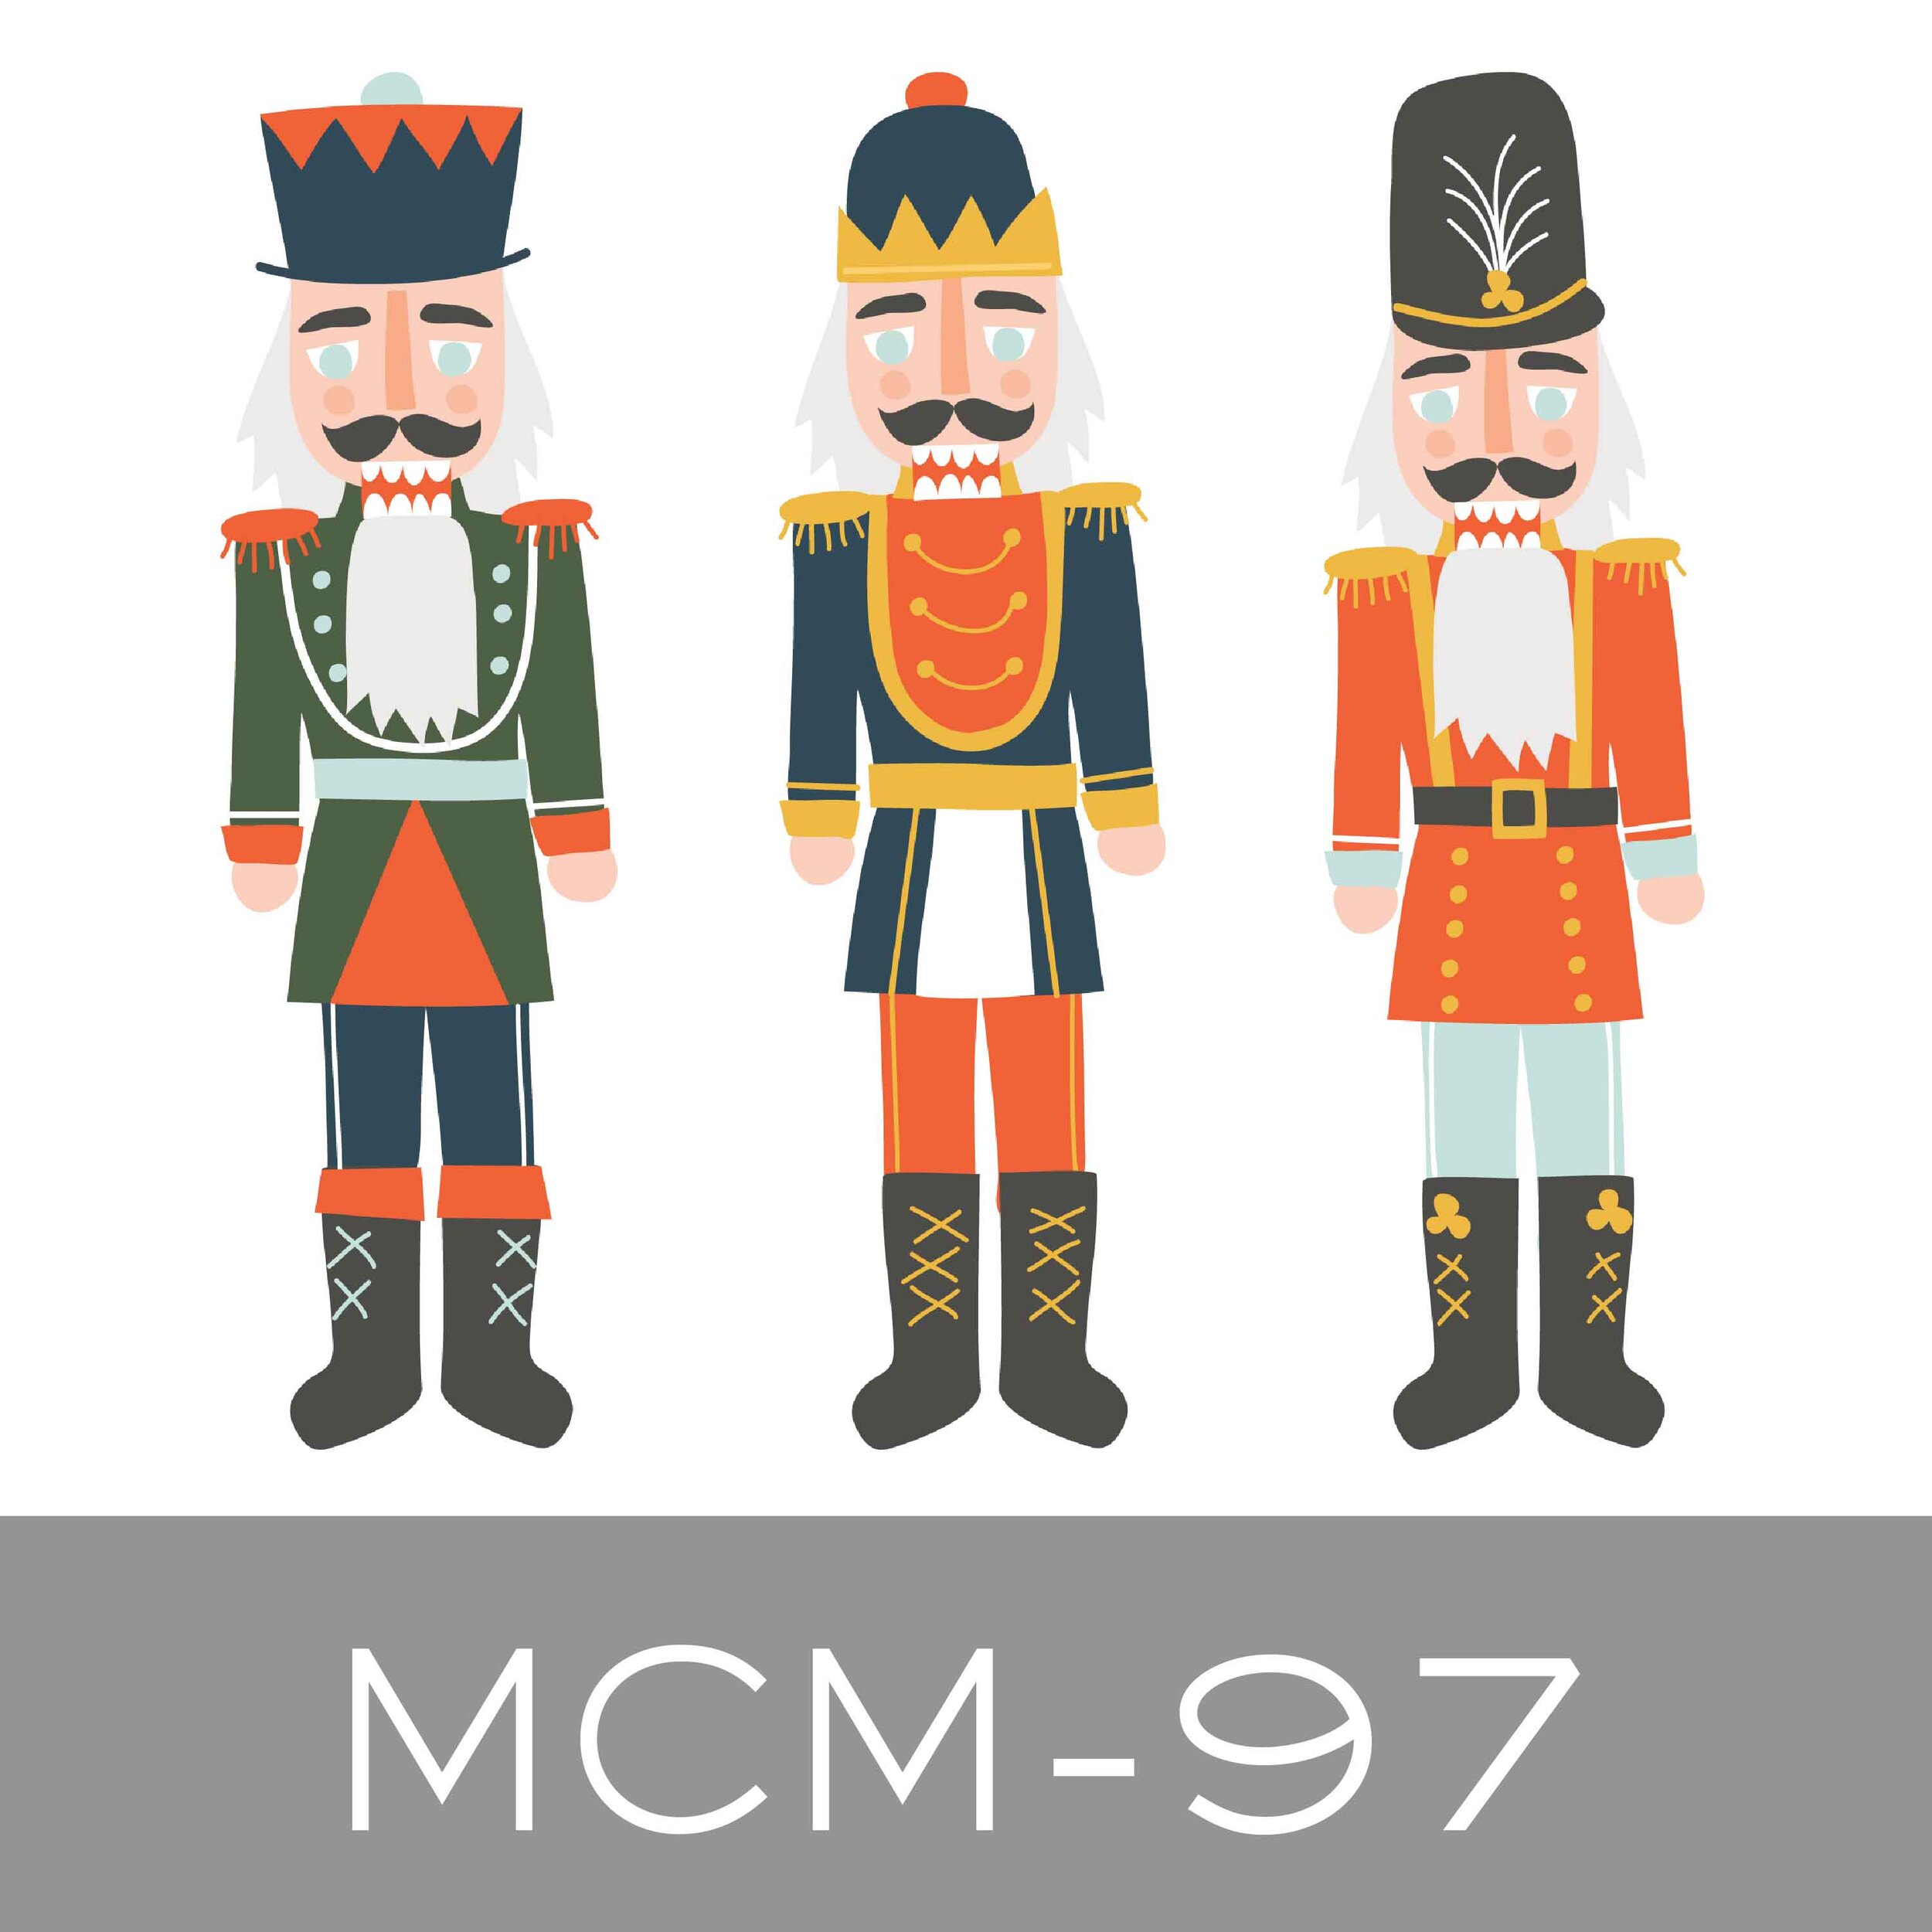 MCM-97.jpg